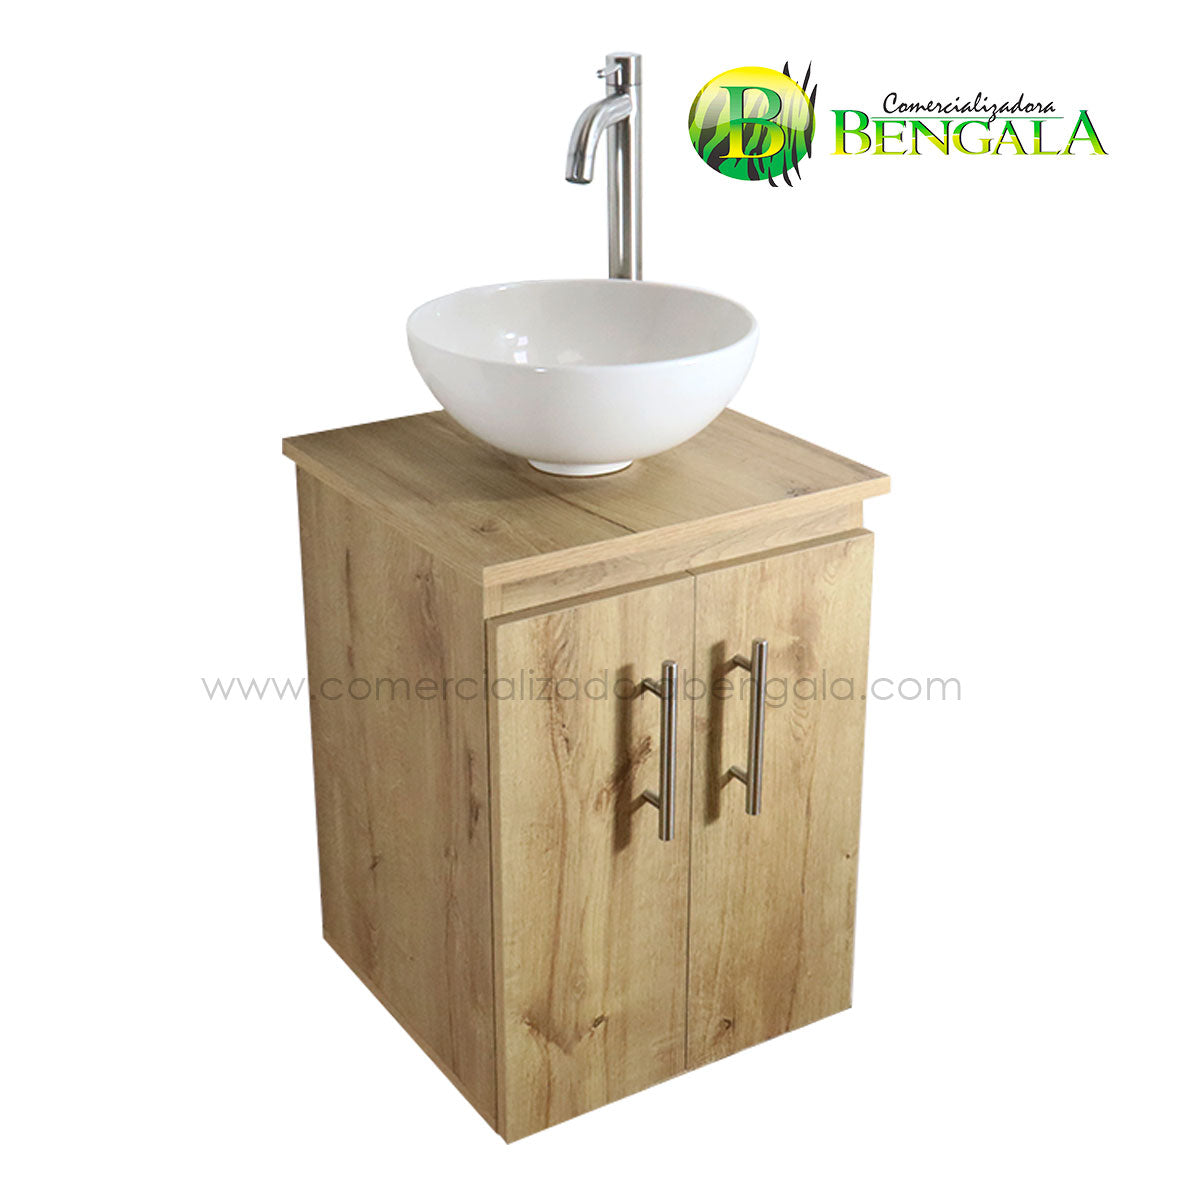 Combo mueble para baño MINI Flotante 38X35 cm – COMERCIALIZADORA BENGALA